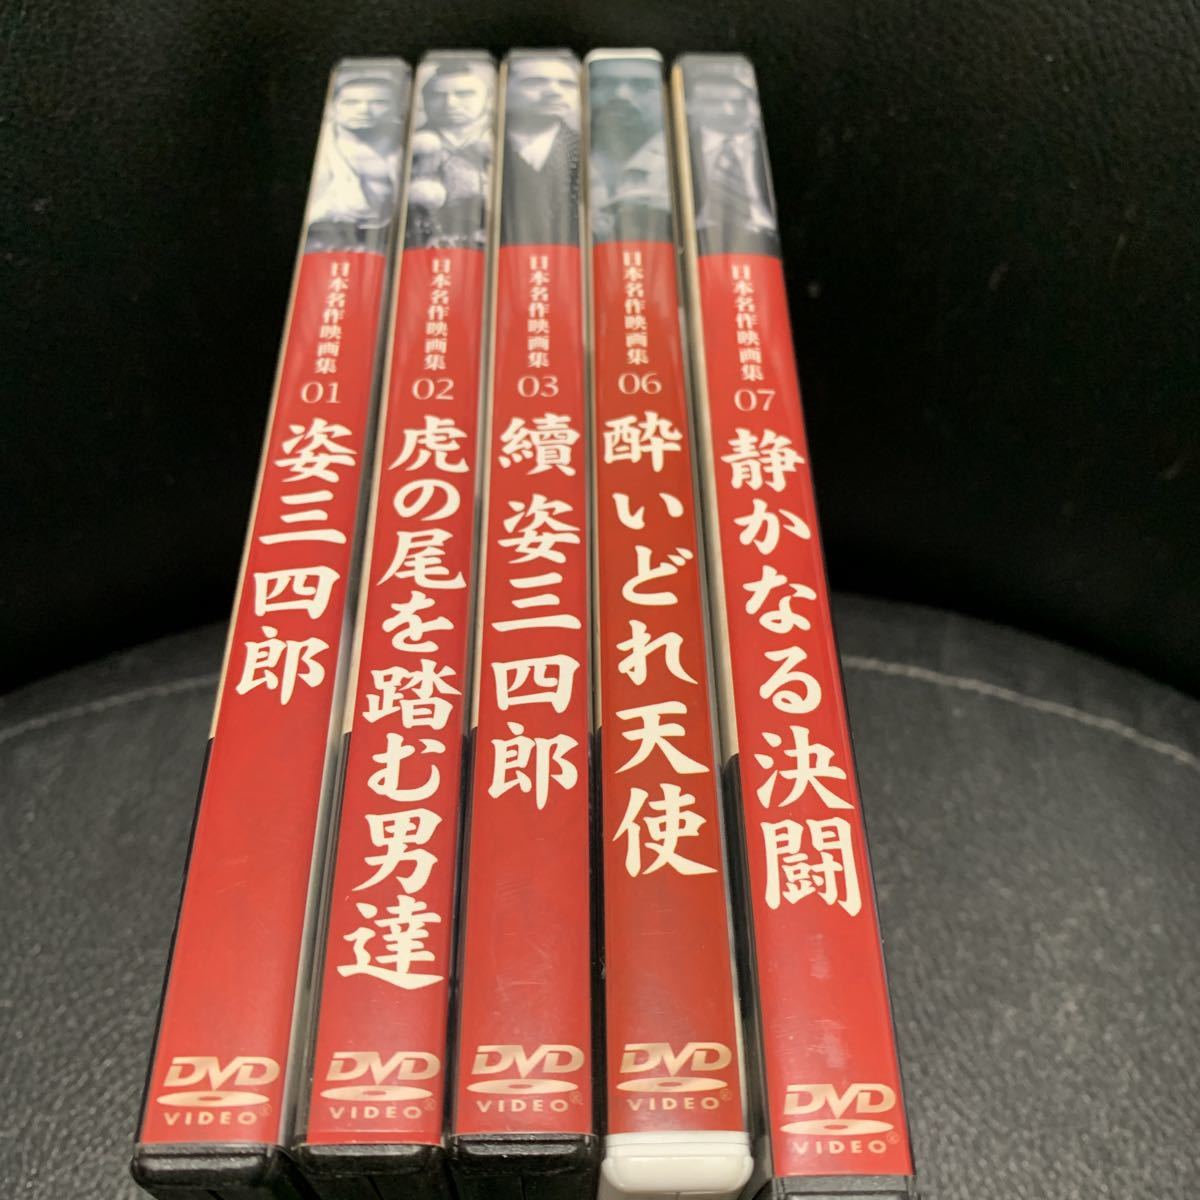 Yahoo!オークション -「姿三四郎」(DVD) の落札相場・落札価格